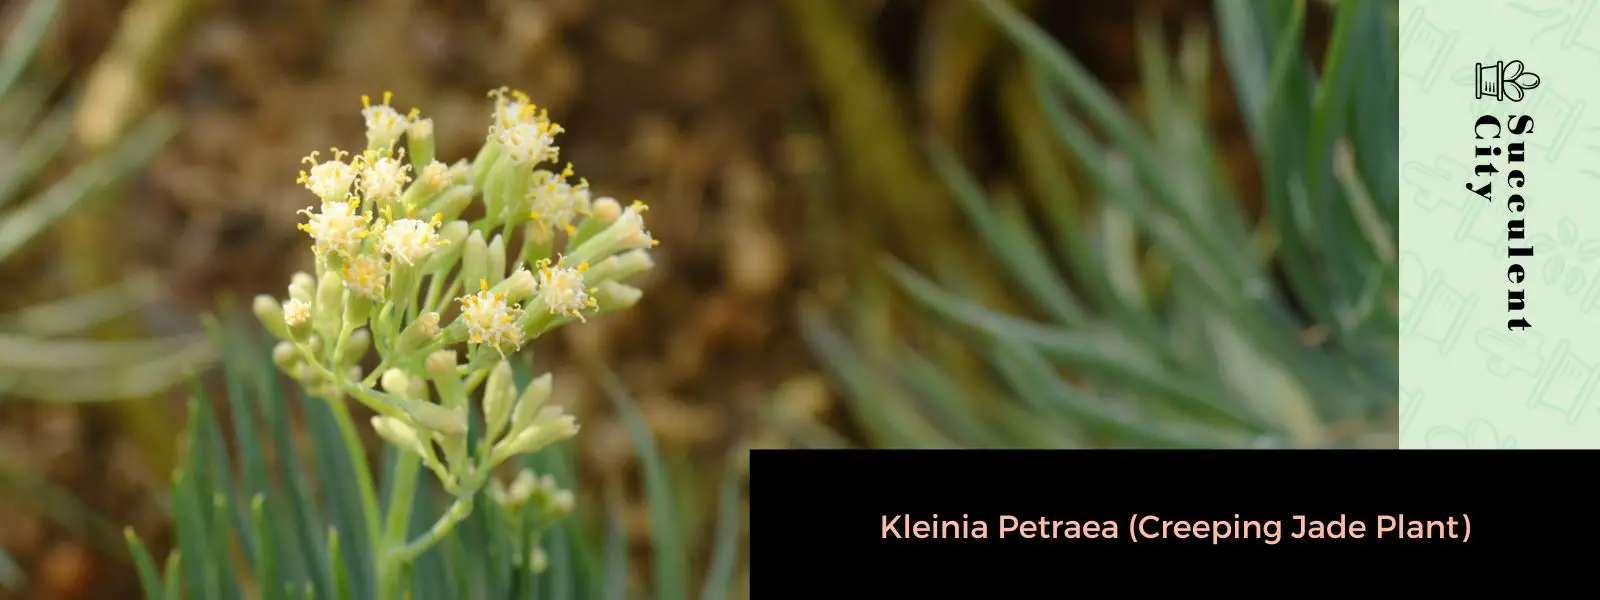 Kleinia Petraea (Planta rastrera de jade)